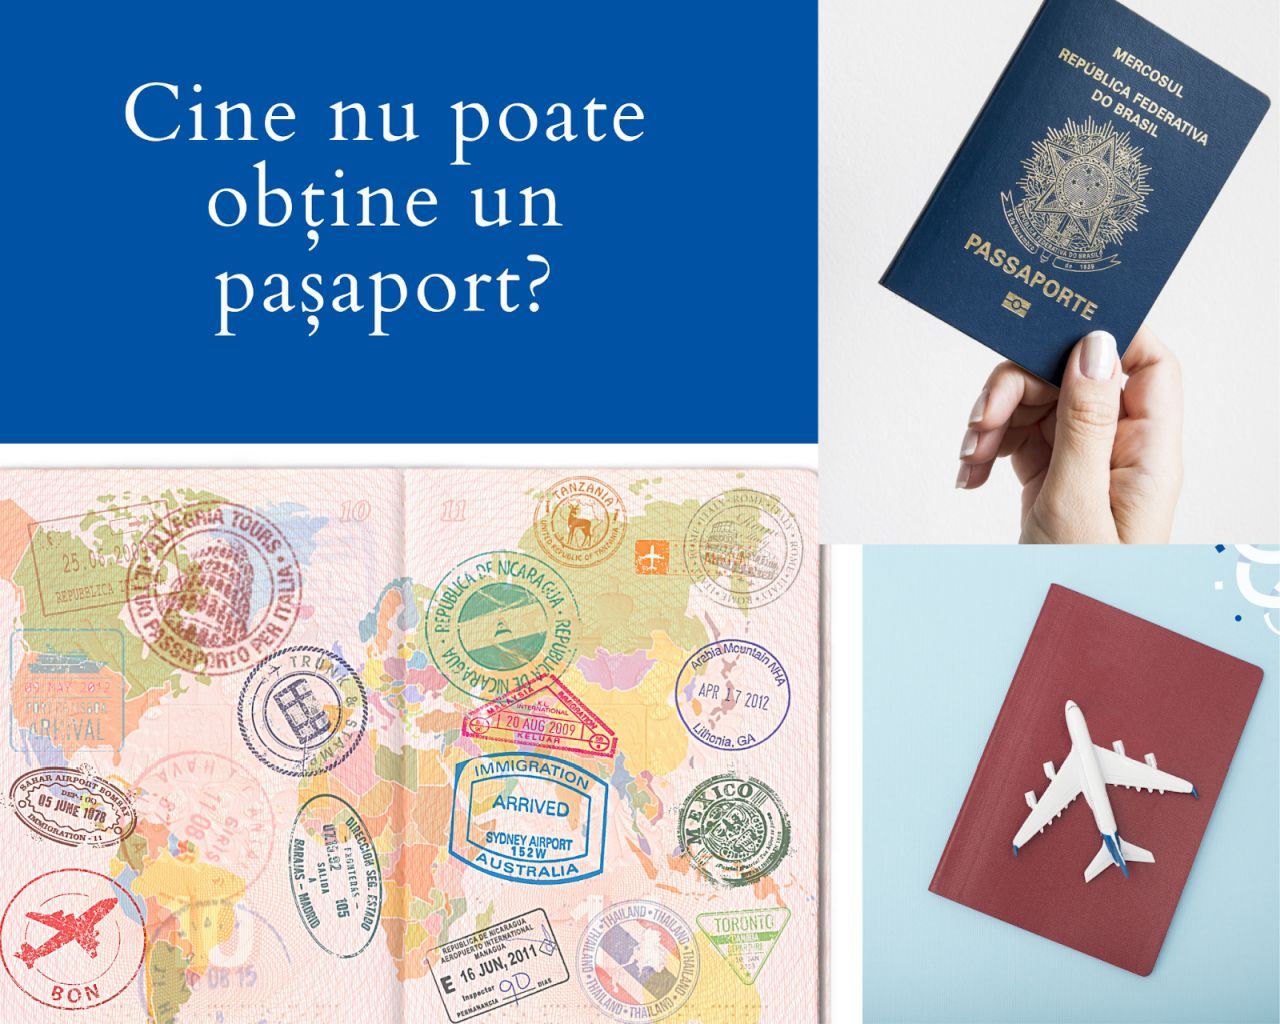 Cine nu poate obține un pașaport?